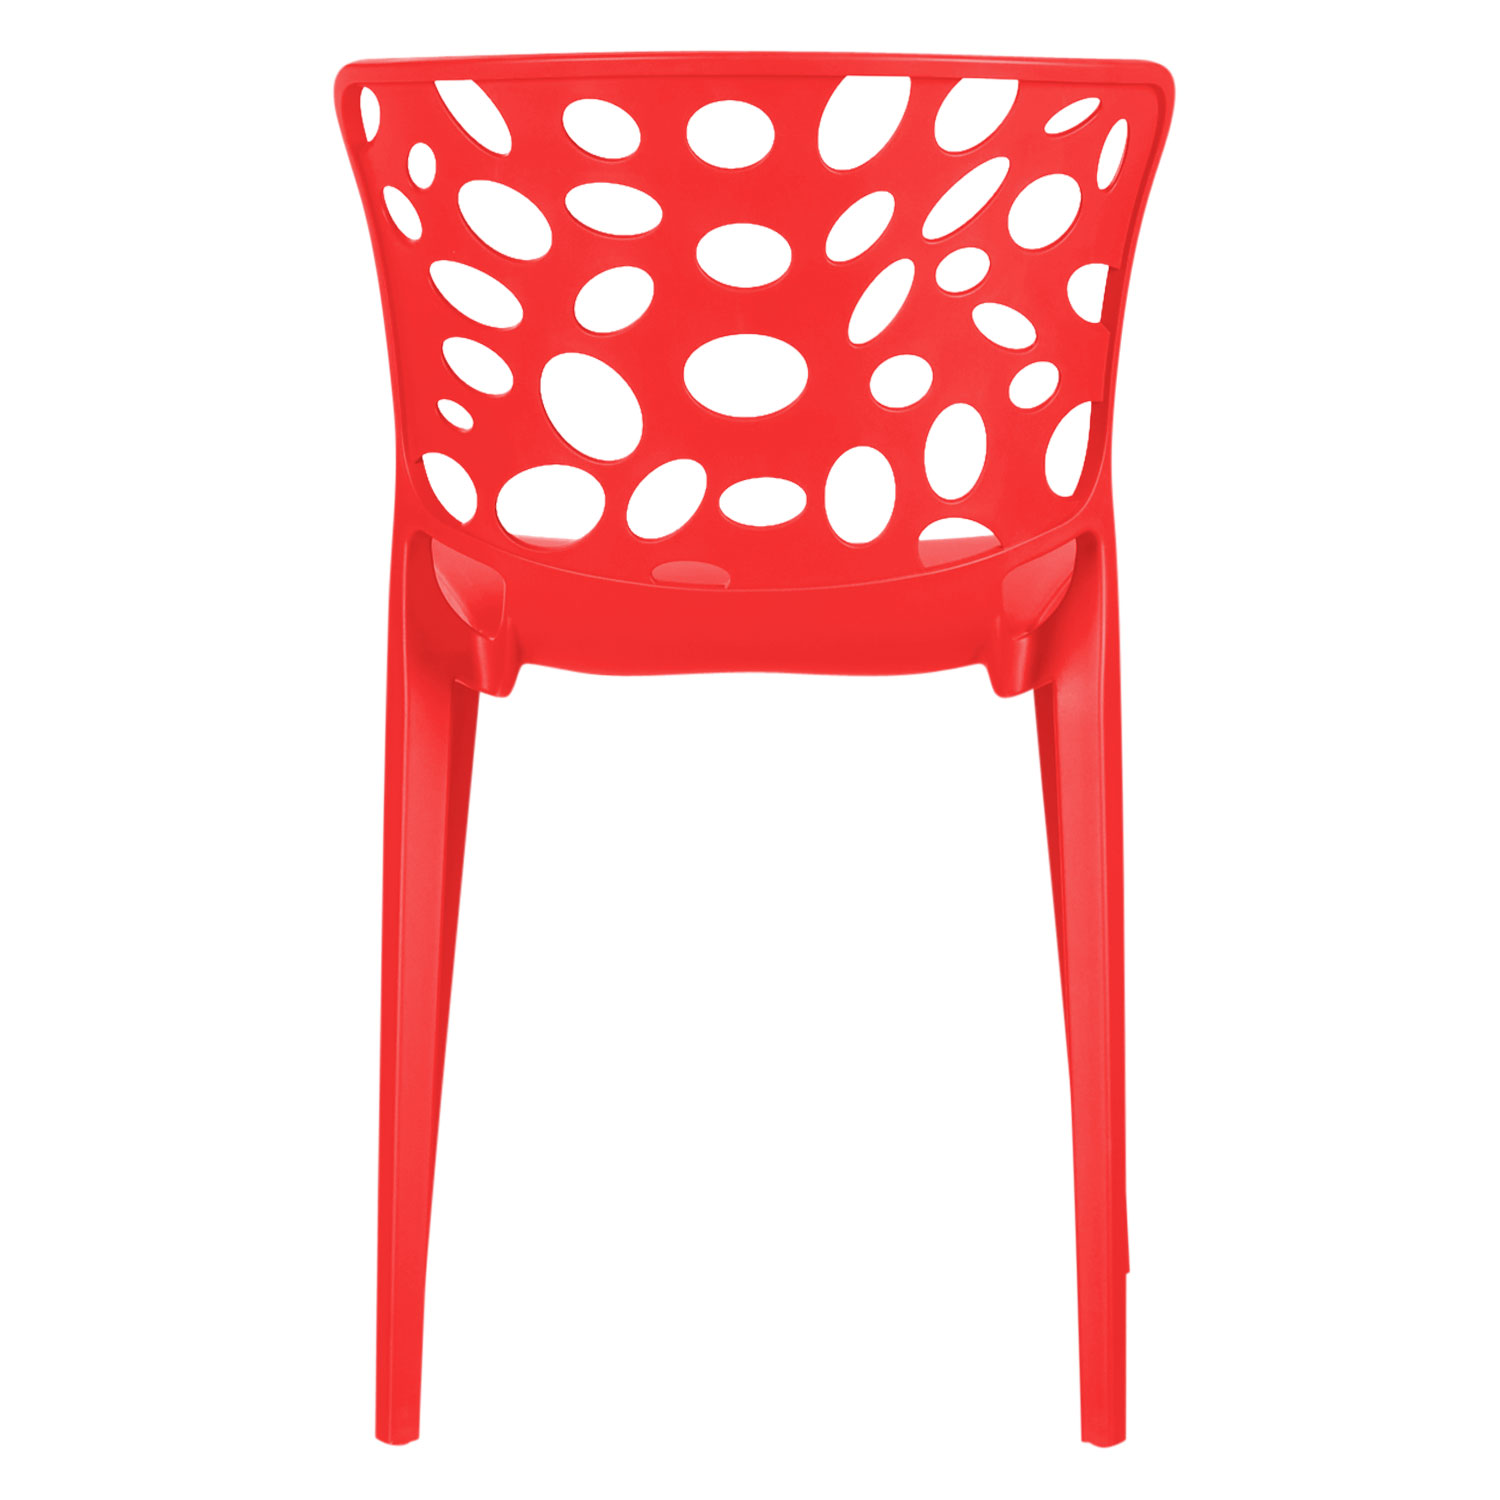 Gartenstuhl 2er Set Modern Rot Stühle Küchenstühle Kunststoff Stapelstühle Balkonstuhl Outdoor-Stuhl